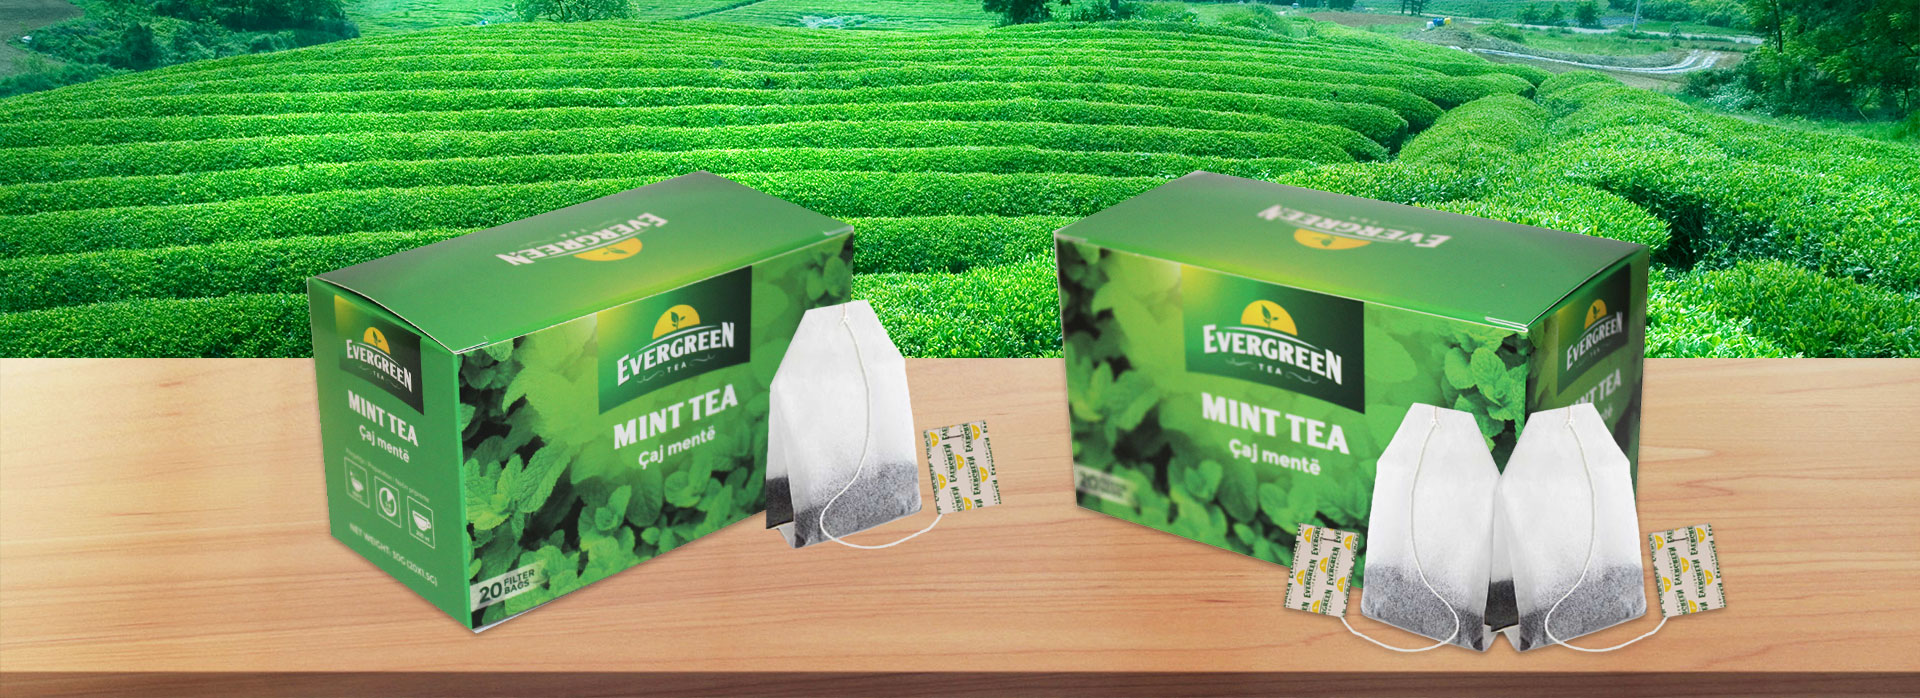 mint-tea